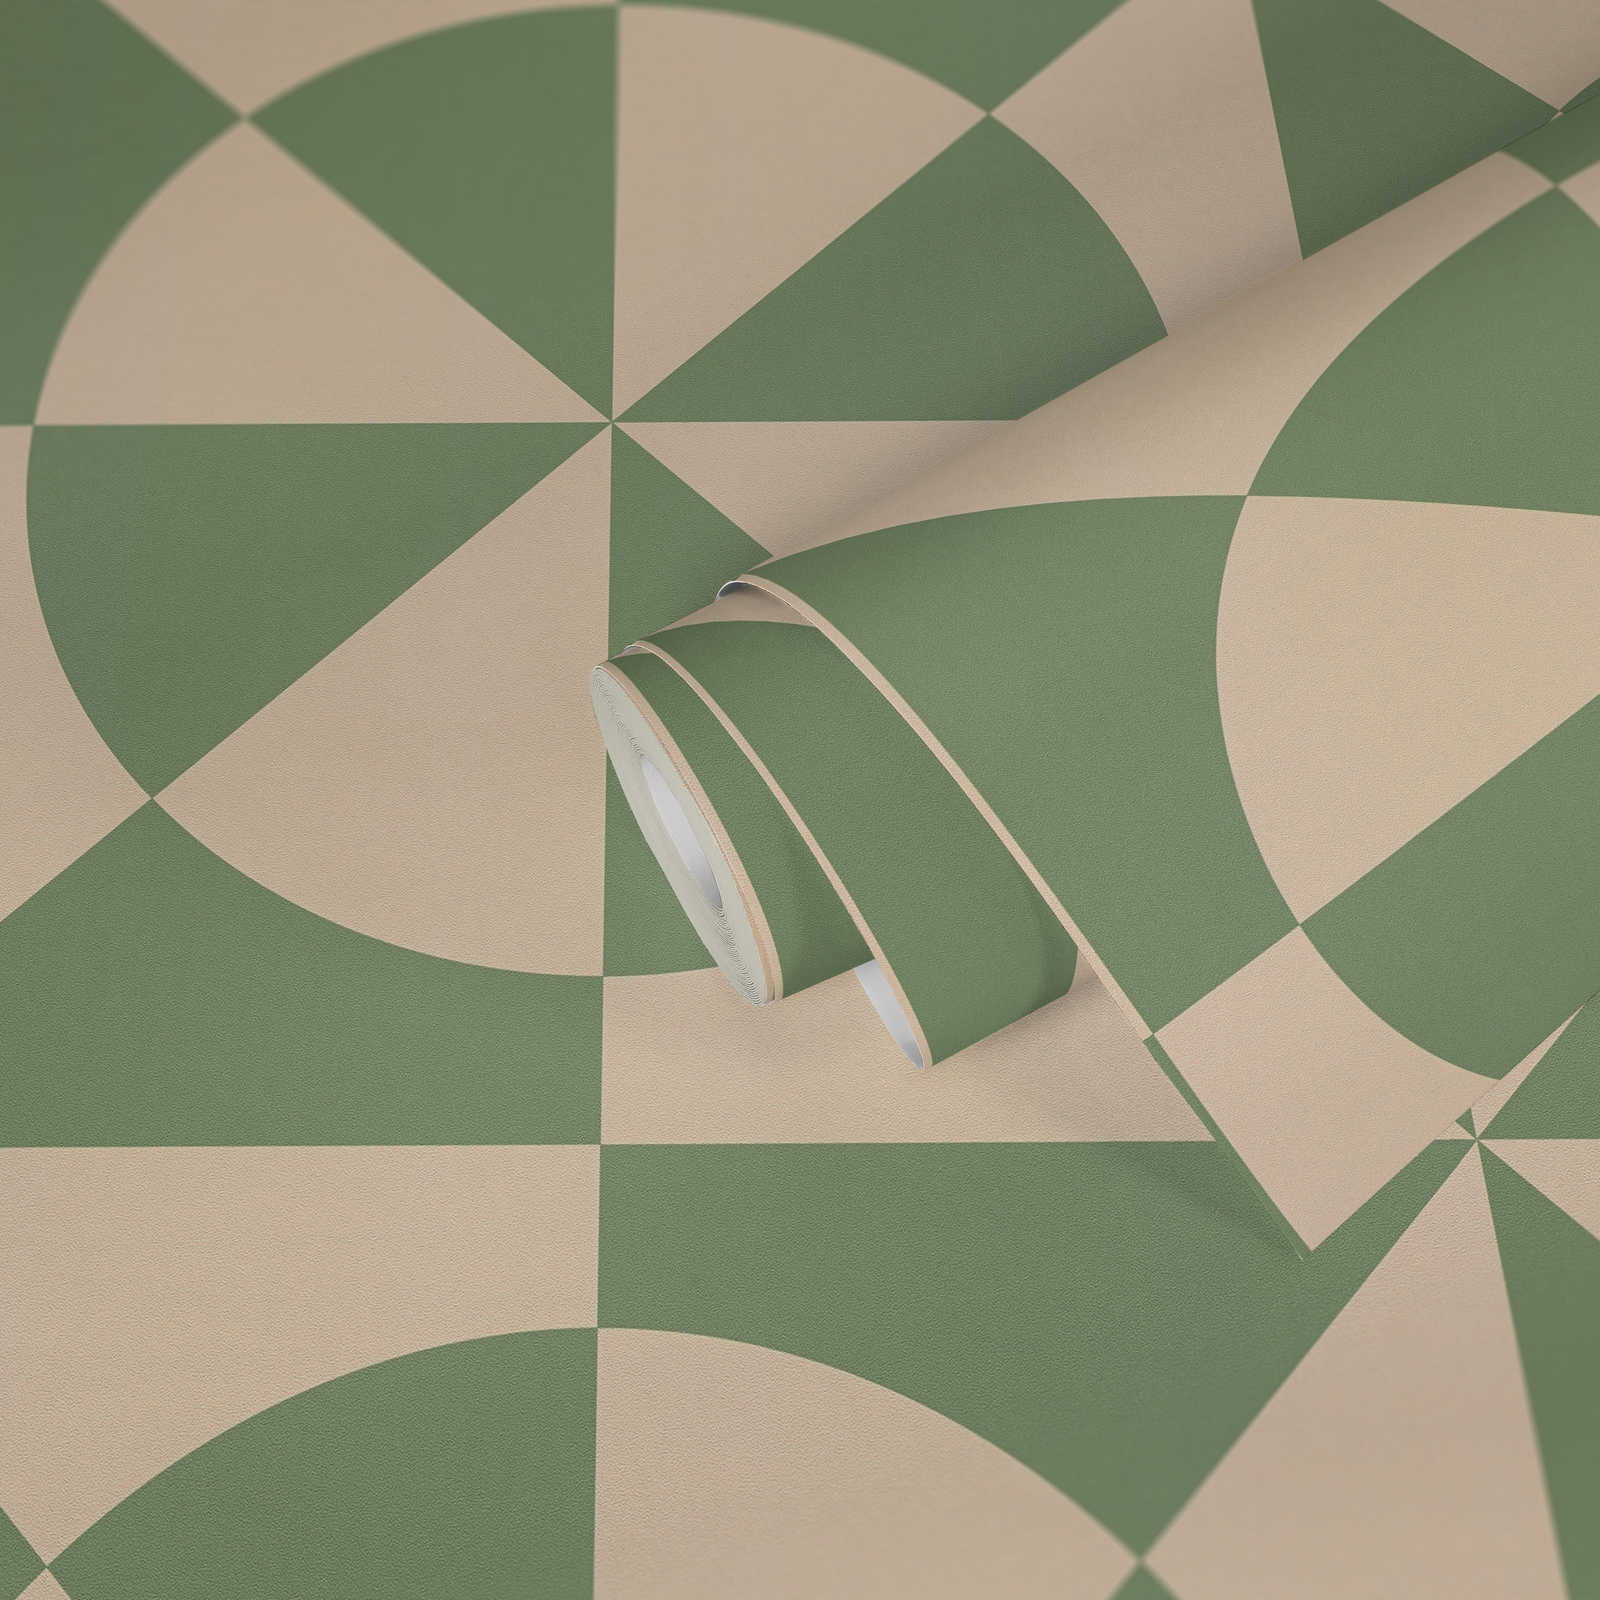             Carta da parati in tessuto non tessuto con motivo a cerchi e forme geometriche - beige, verde
        